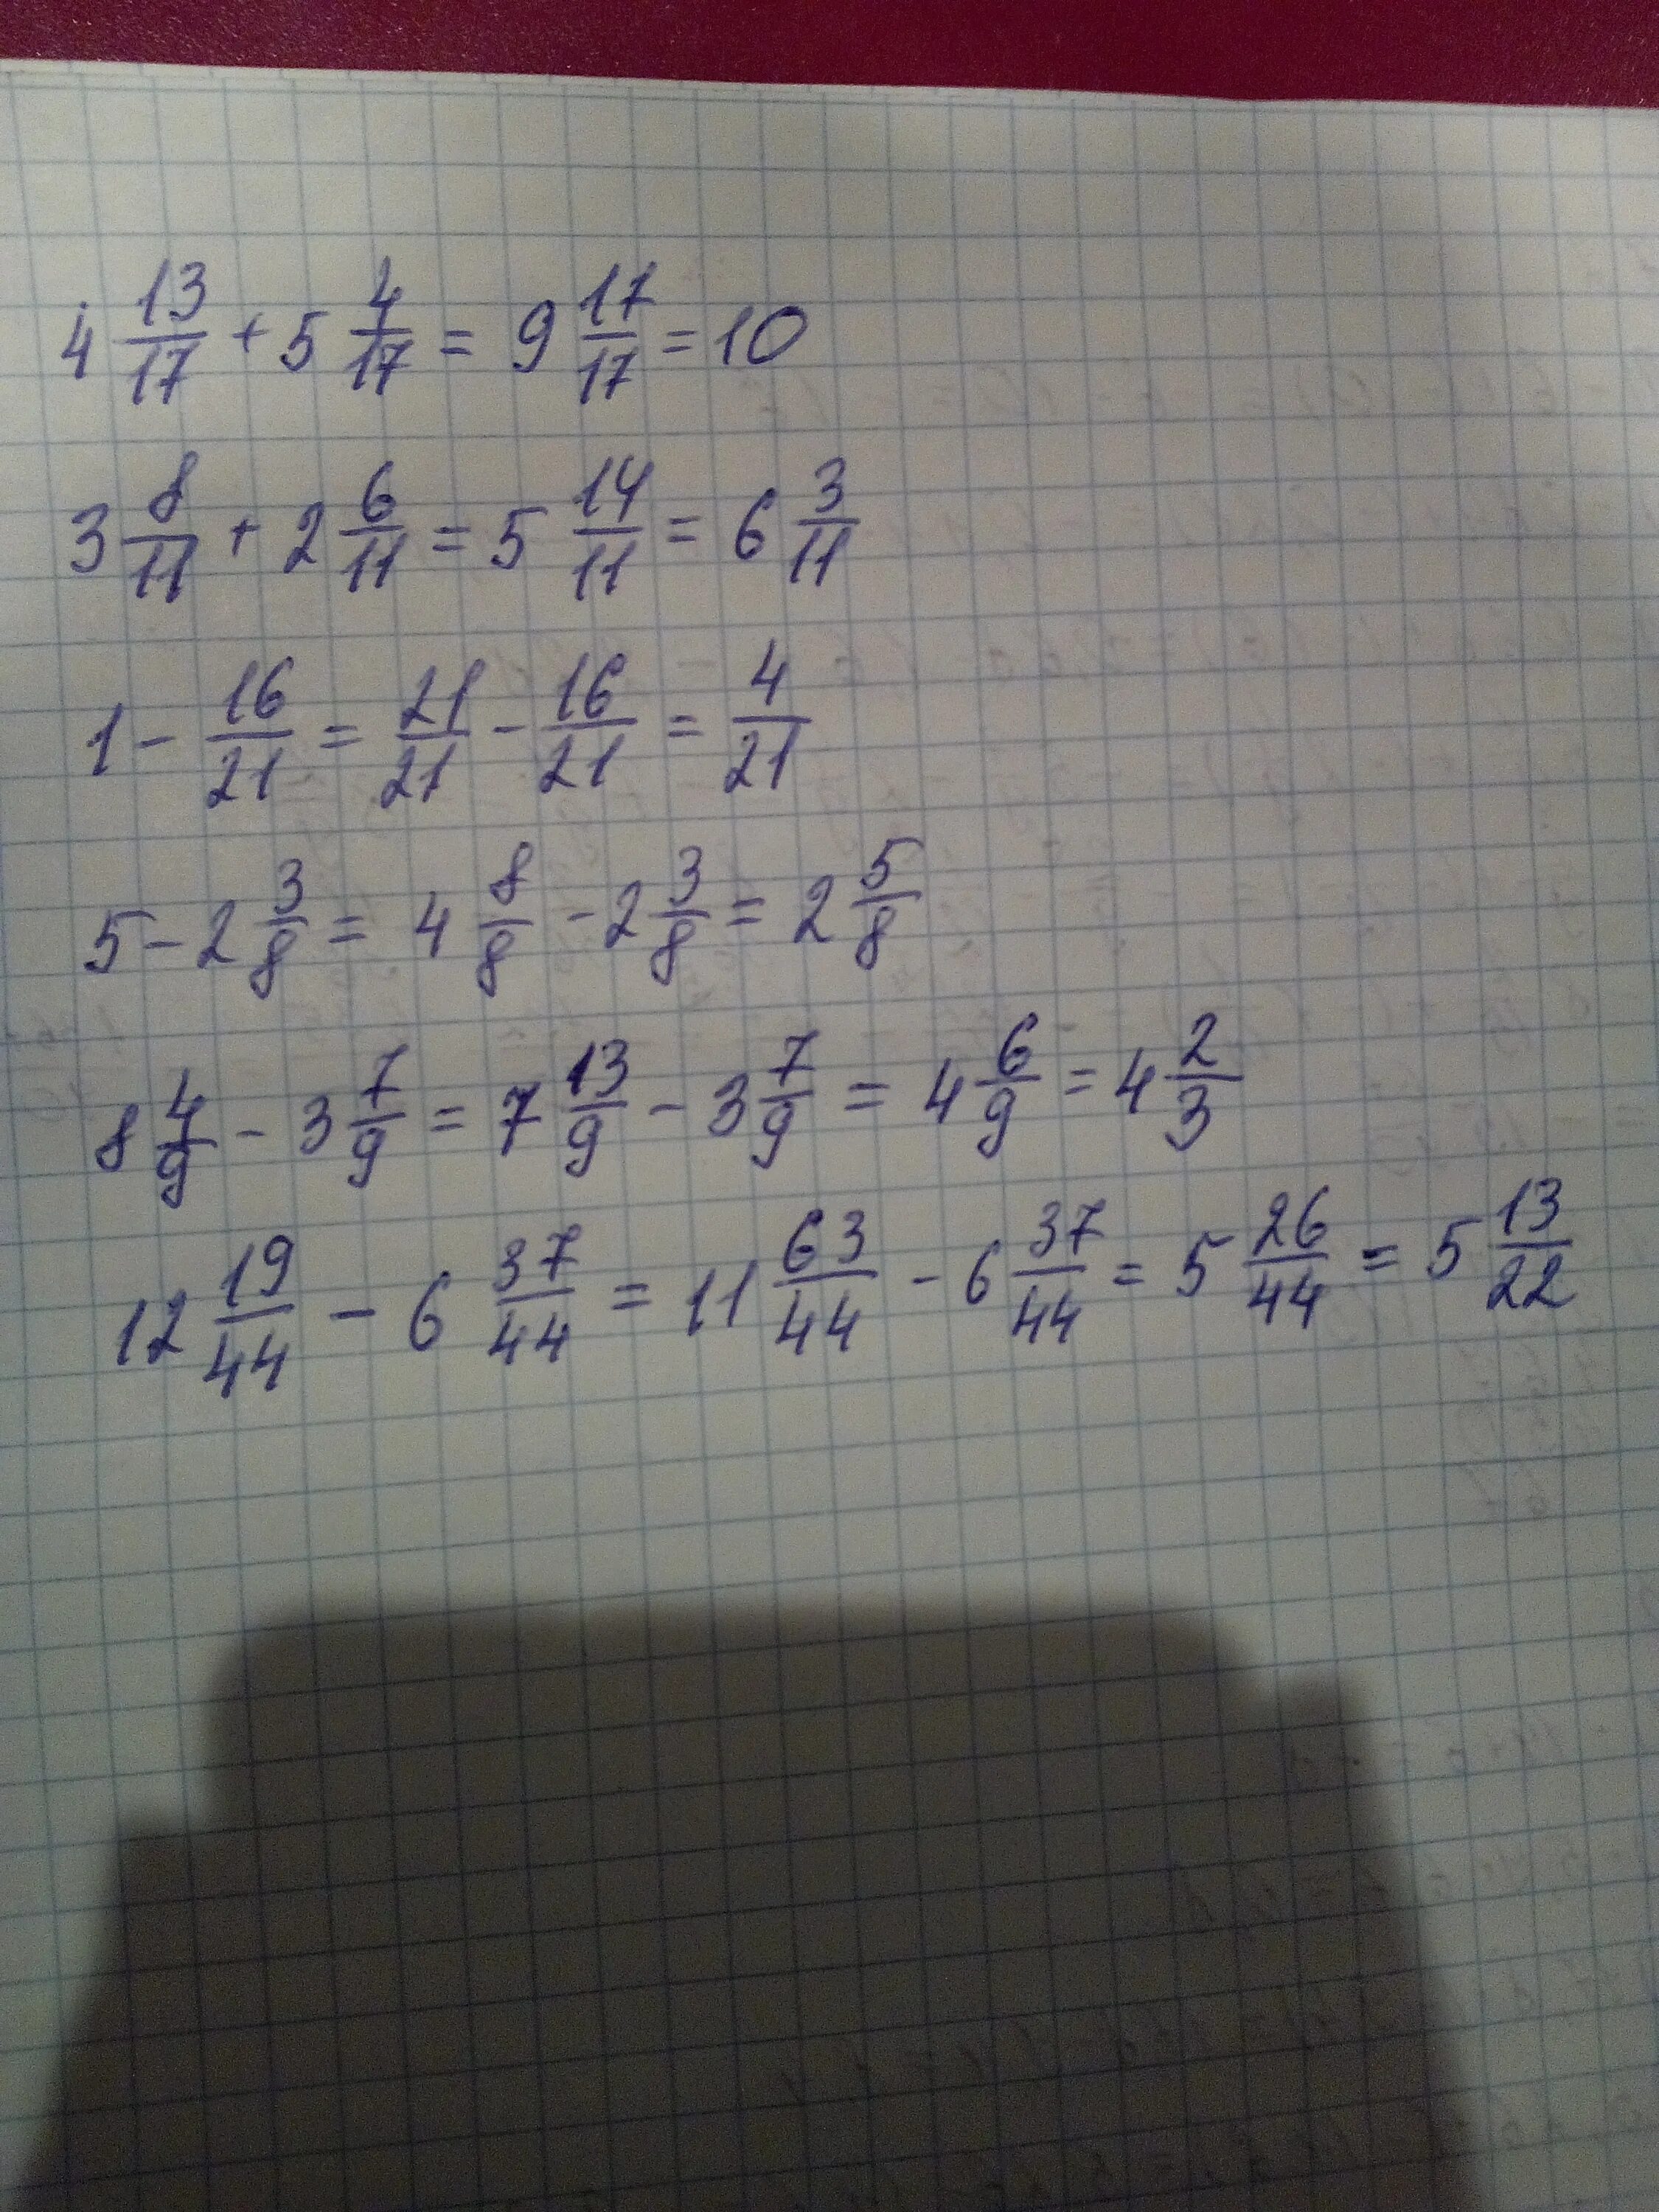 11 4 9 2 3 1. (5 1/16-1 1/8)×(5/6+3/15). (2/5-6,6) :(1 1/4- 11/3) Решение. (6 3/4-5 2/5) +(3 4/5+2 1/5) Решение. (9-2 3/11)+(2+1 9/11) Решение.